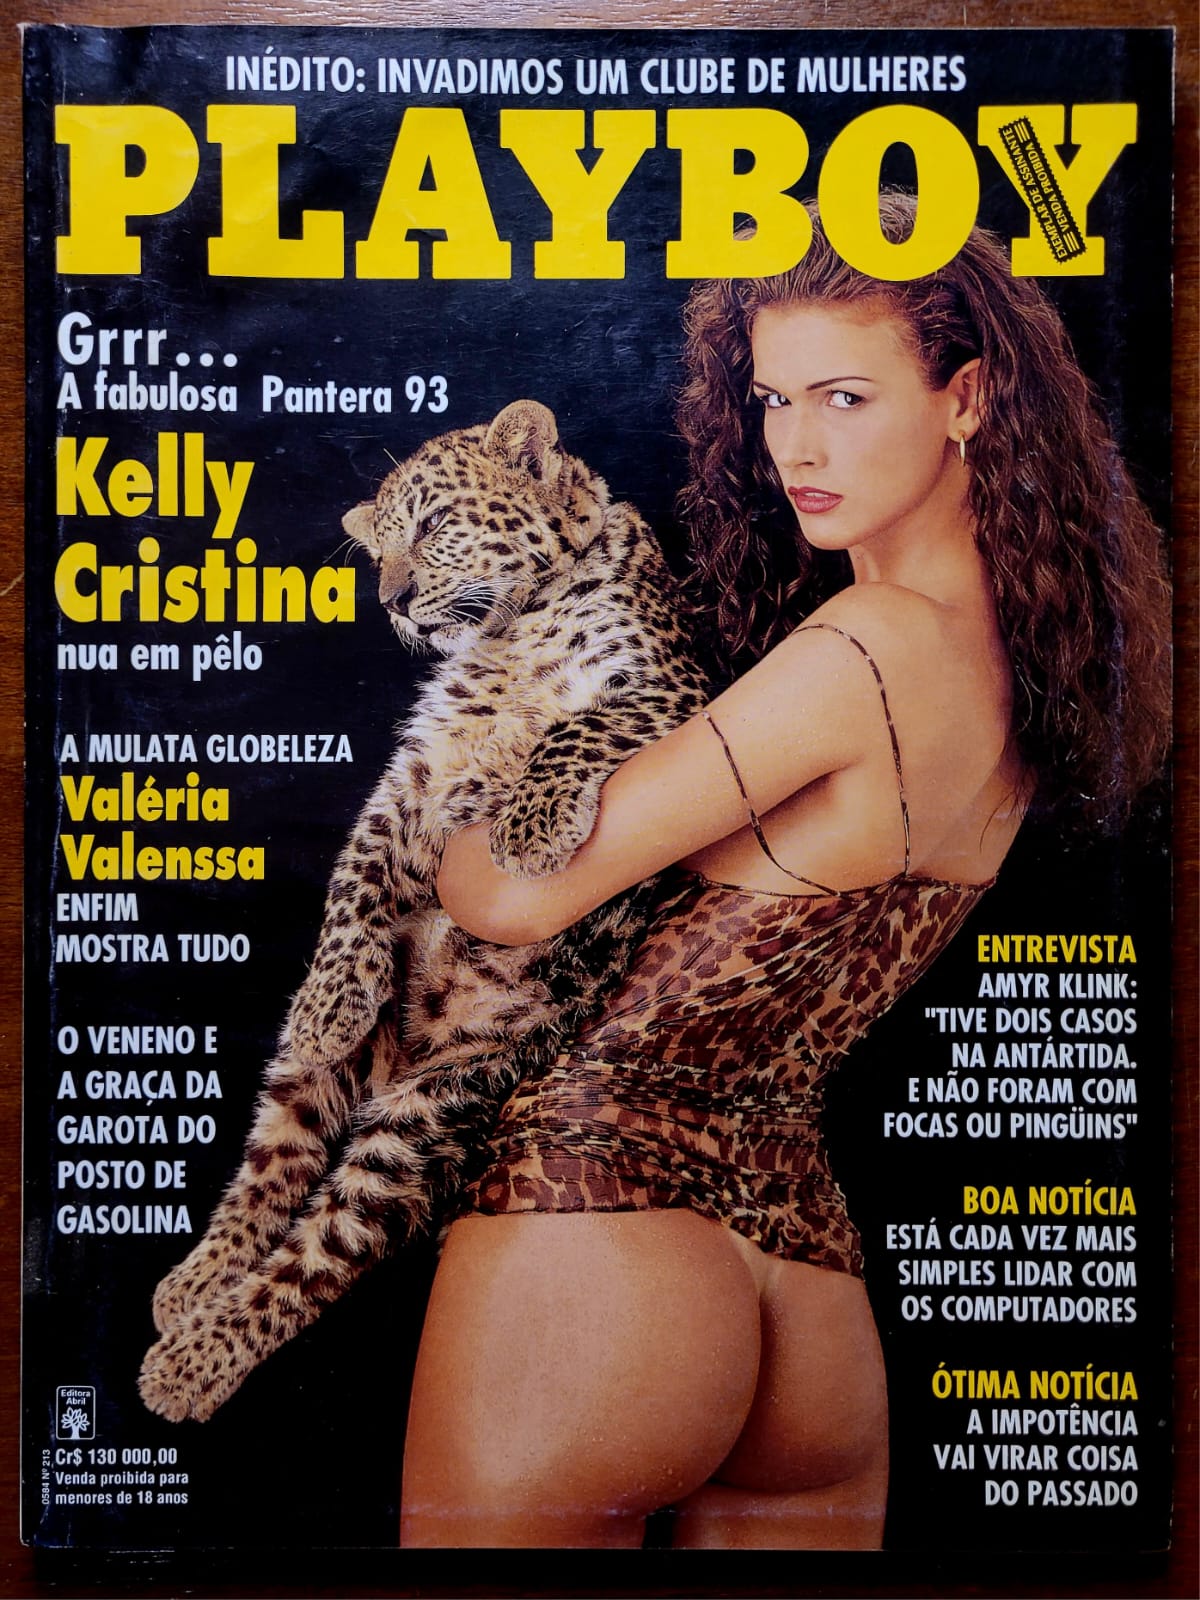 Playboy No 213 Kelly Cristina 1 Casa do Colecionador